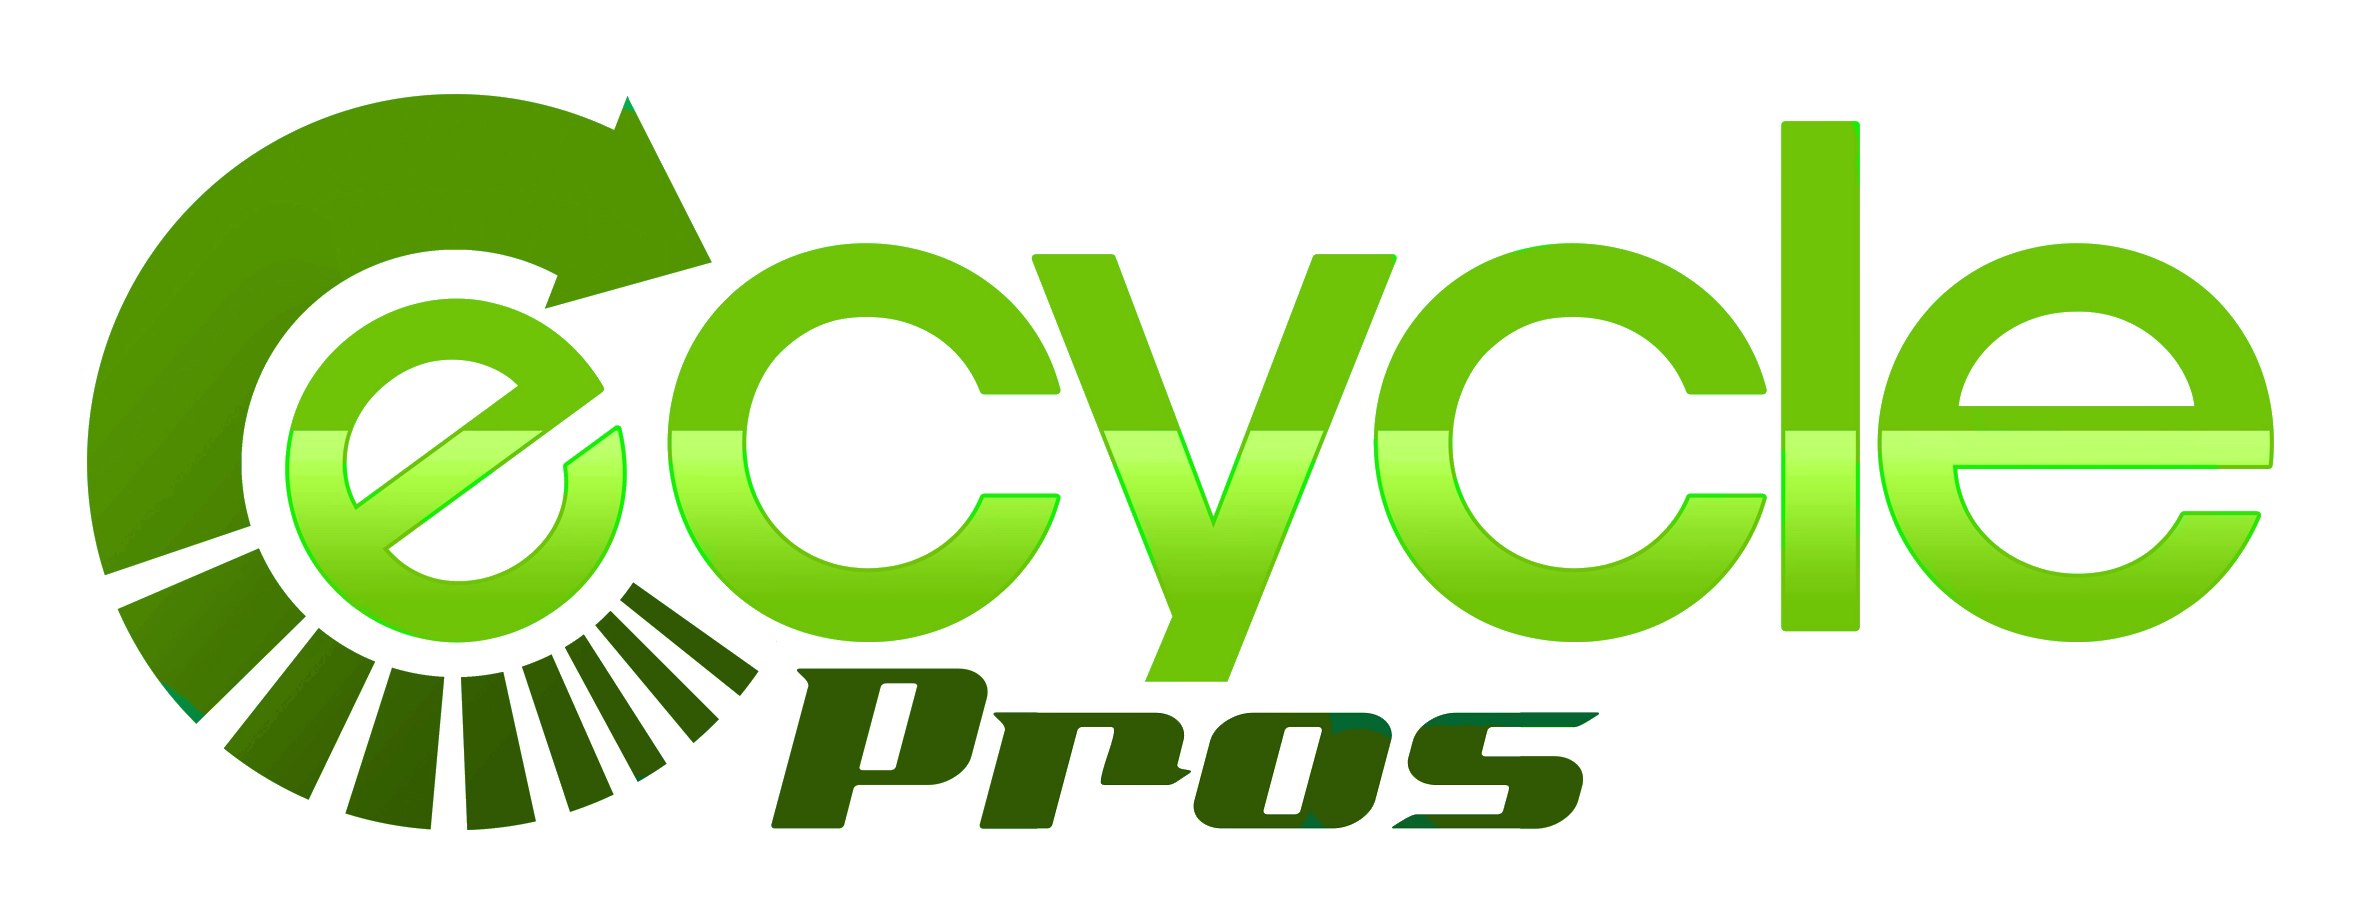 E-Cycle Pros